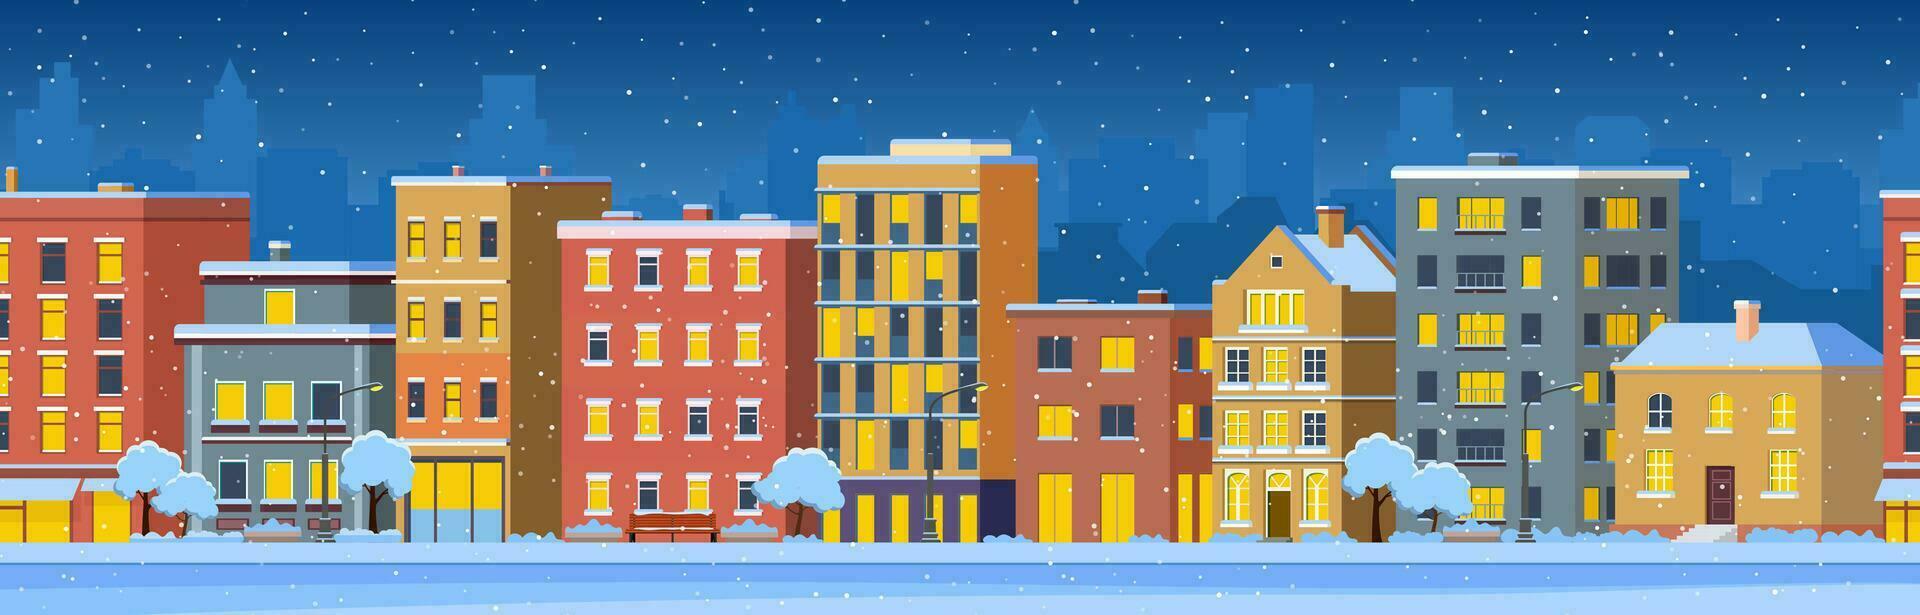 ciudad edificio casas invierno calle paisaje urbano en el noche antecedentes. alegre Navidad contento nuevo año concepto horizontal bandera. vector ilustración en plano estilo